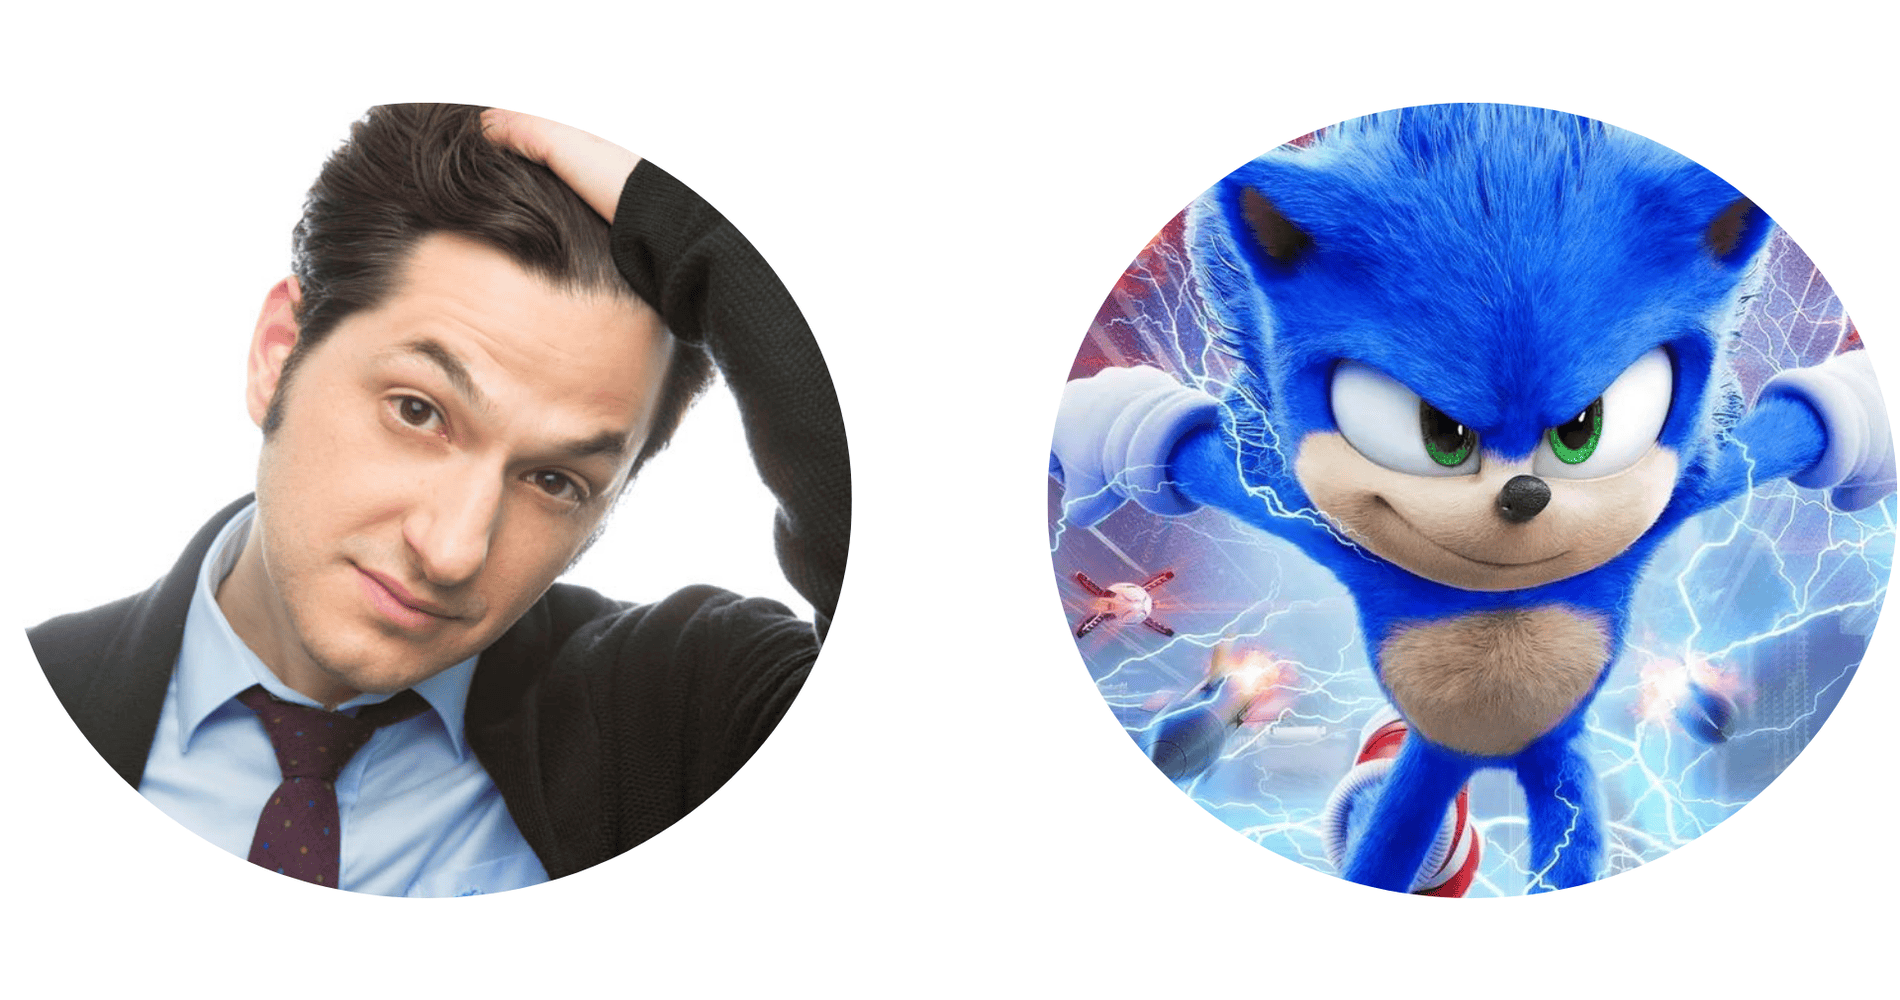 sonic the hedgehog 3 cast, Ben Schwartz as Sonic